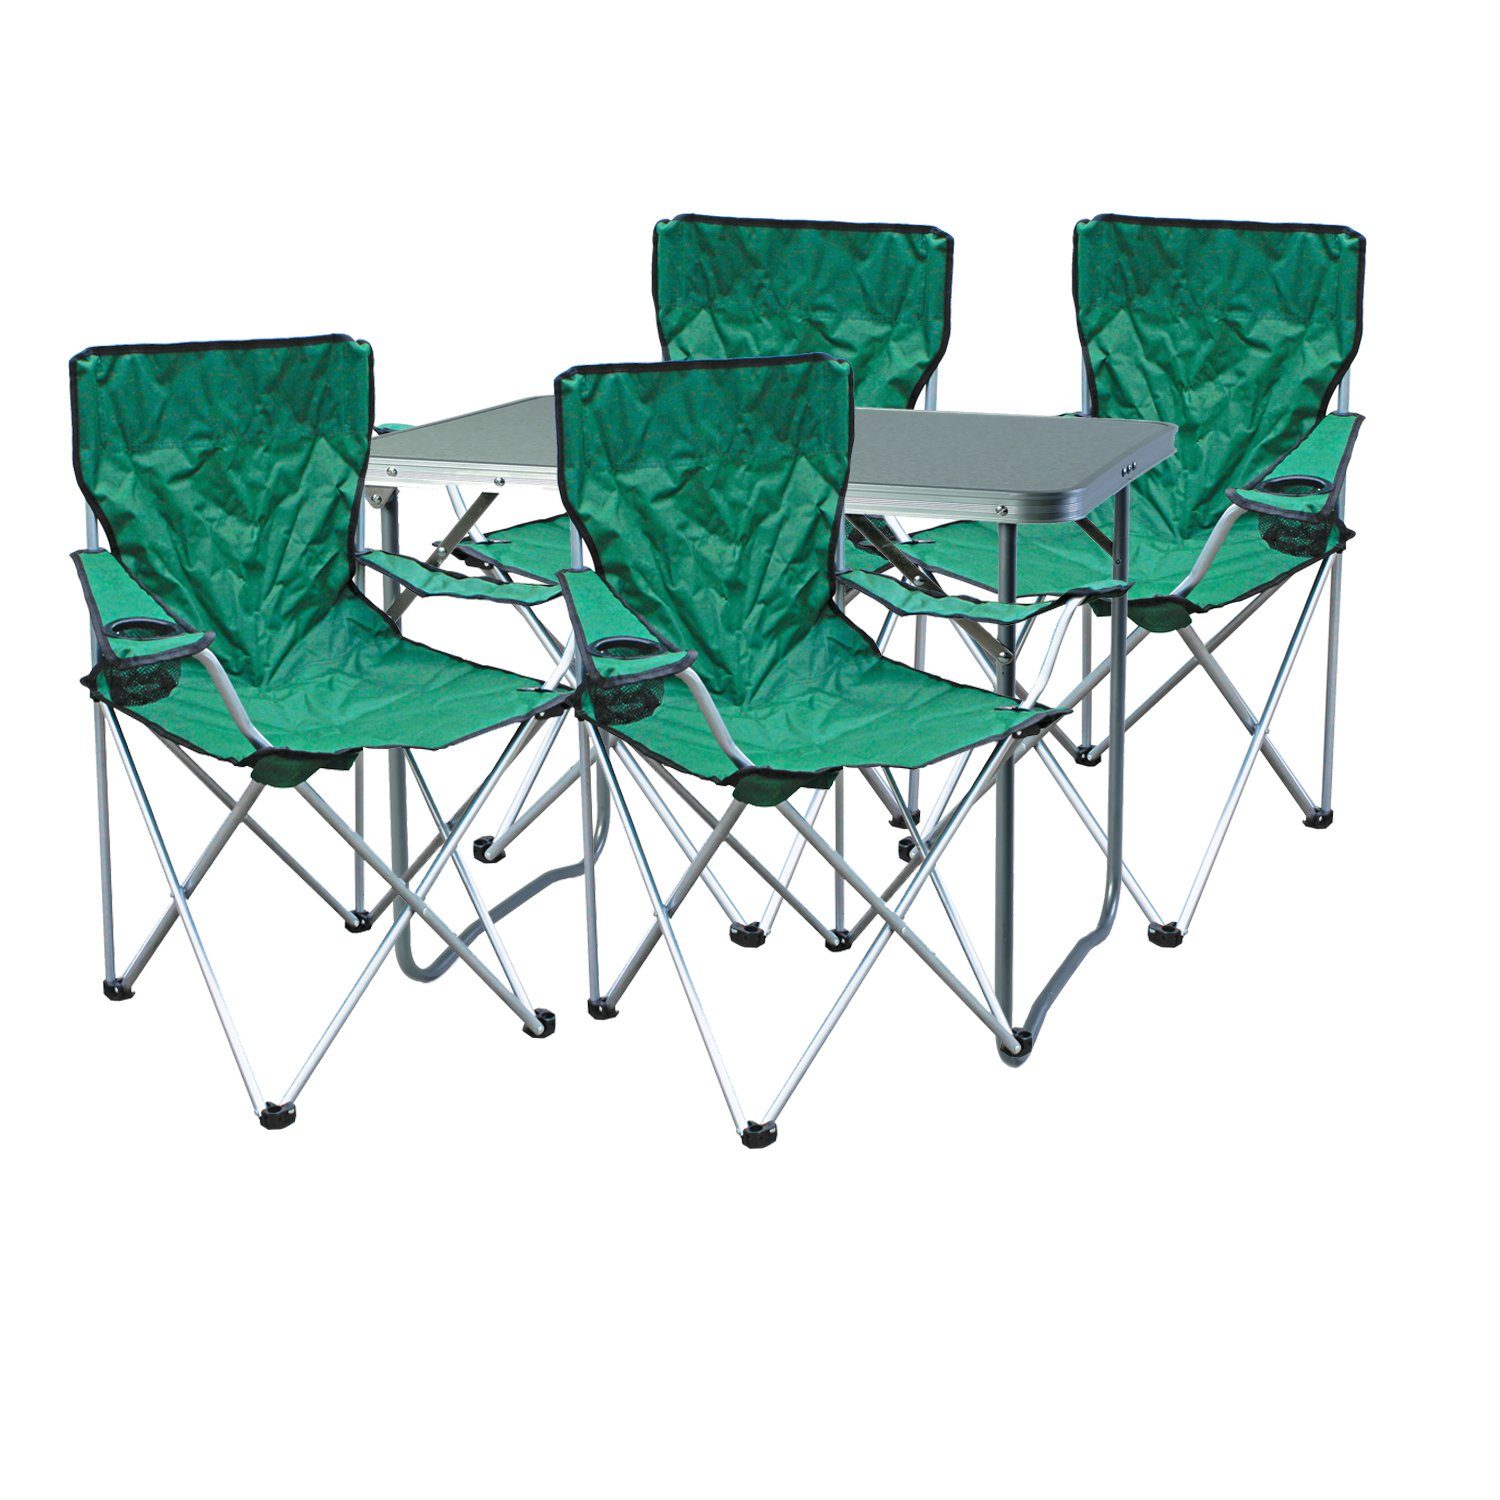 Sparangebot Mojawo Essgruppe 5-teiliges Campingmöbel Set Tisch 4x Tasche Grün 1x inkl. + Stuhl